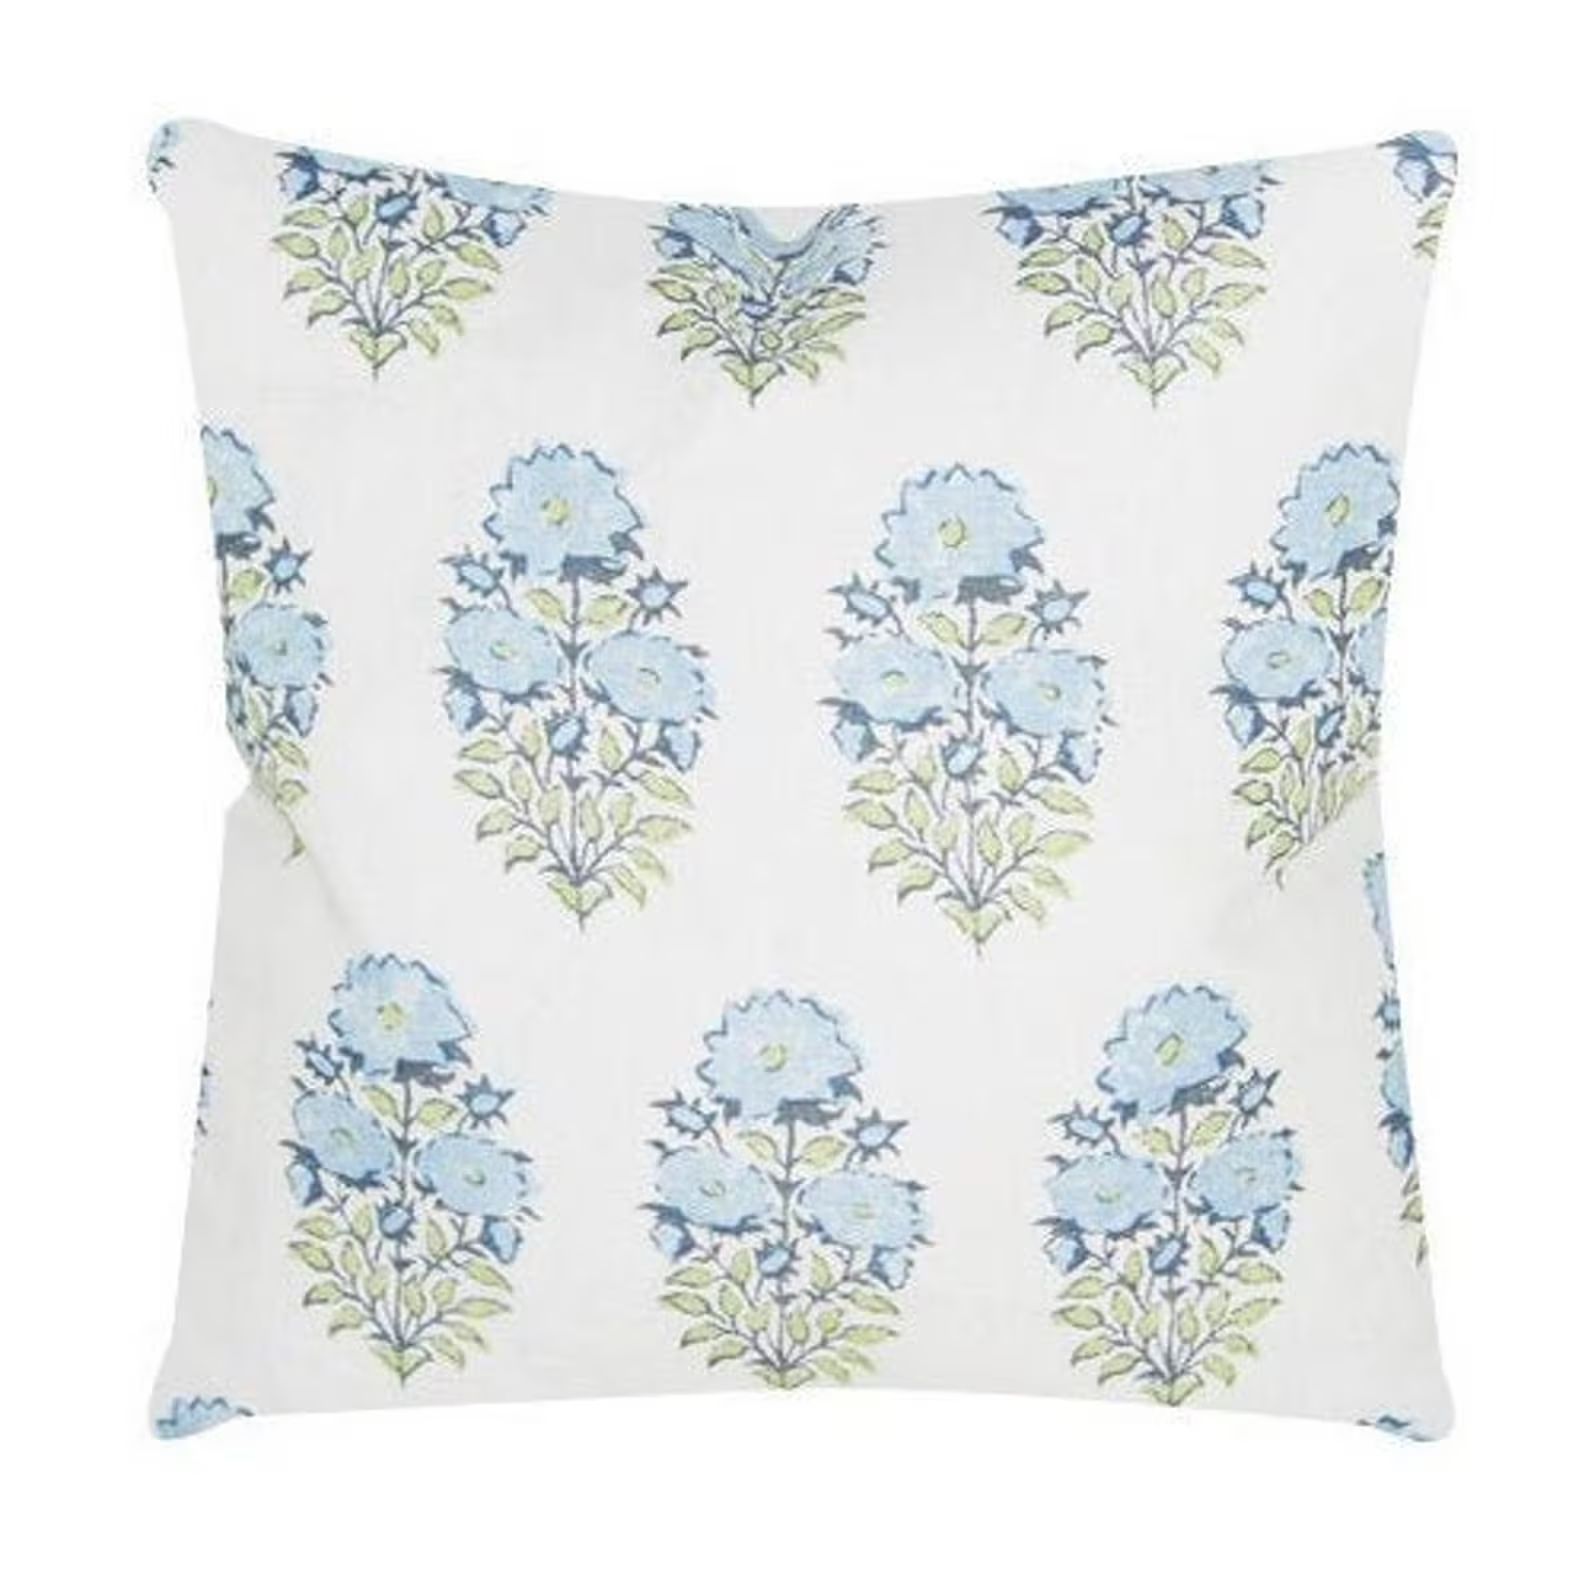 Lisa Fine Mughal Flower Pillow Cover in Monsoon // Designer Flower Pillow // Blue Throw Pillows /... | Etsy (US)